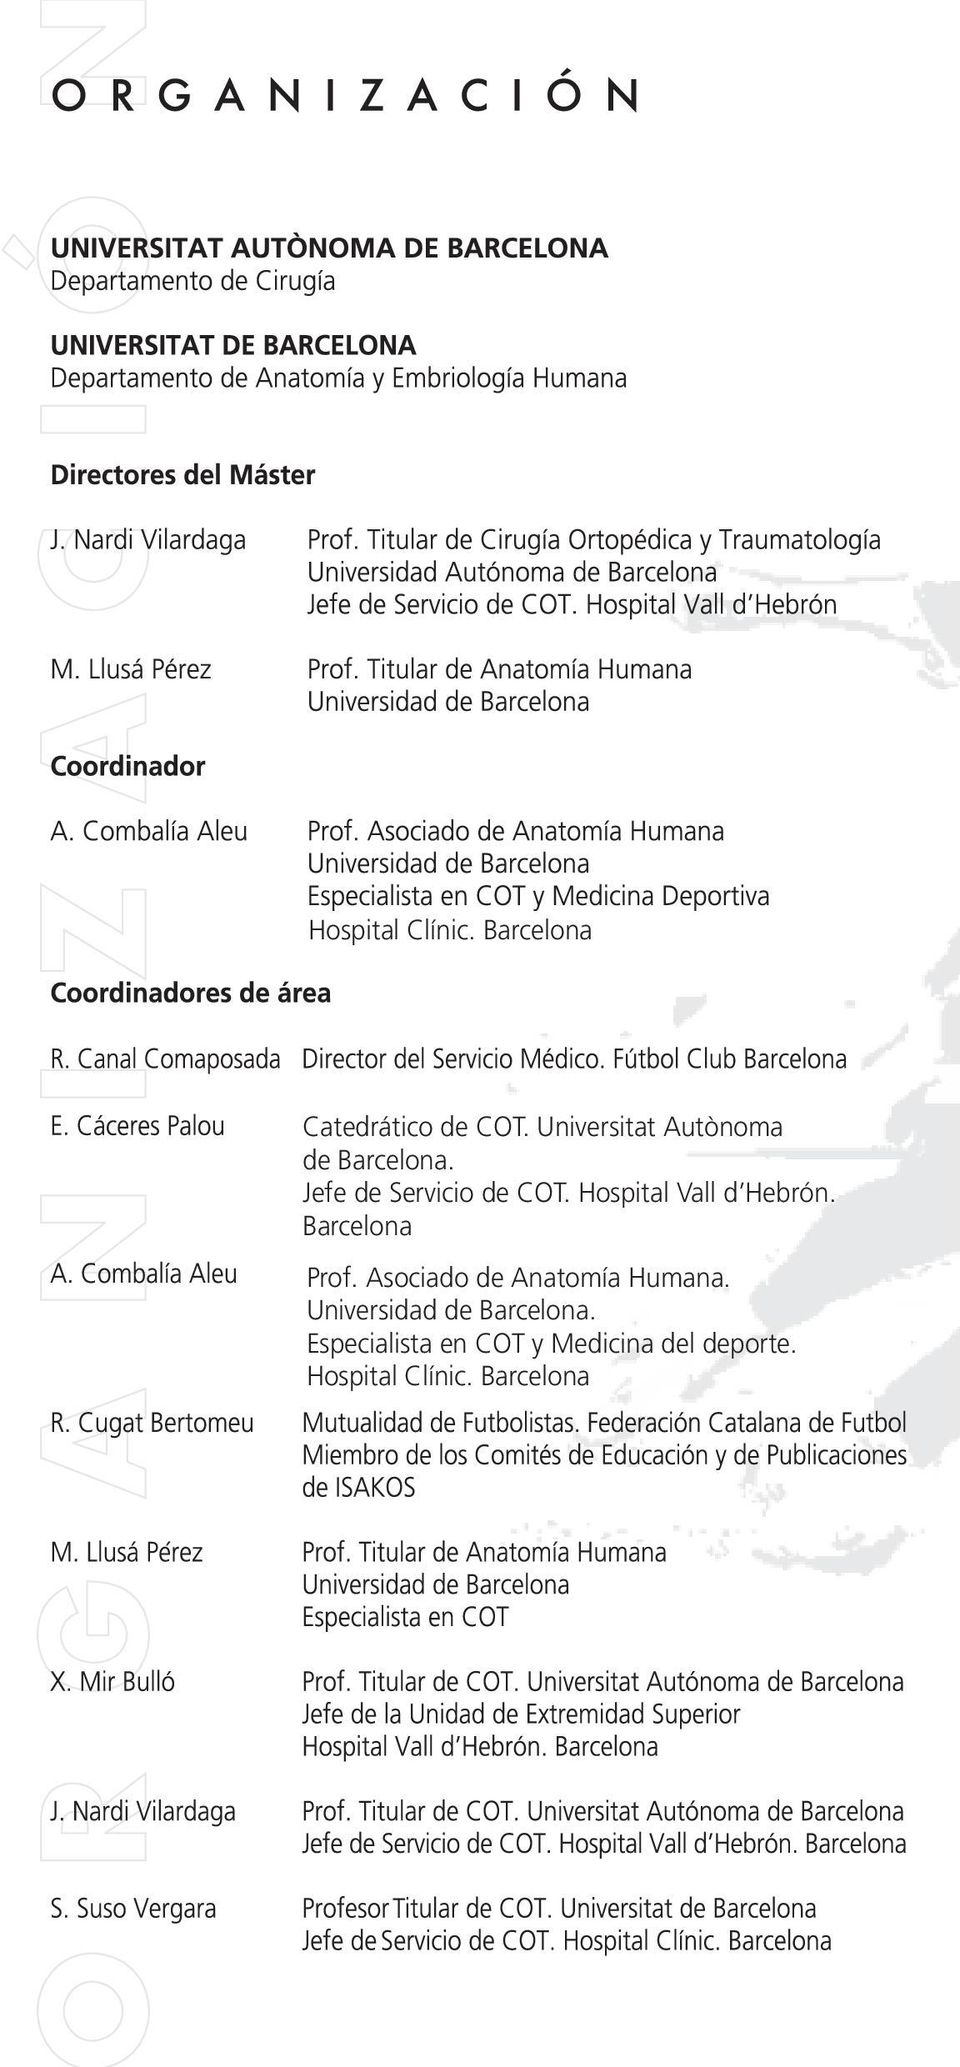 Barcelona Prof. Asociado de Anatomía Humana.